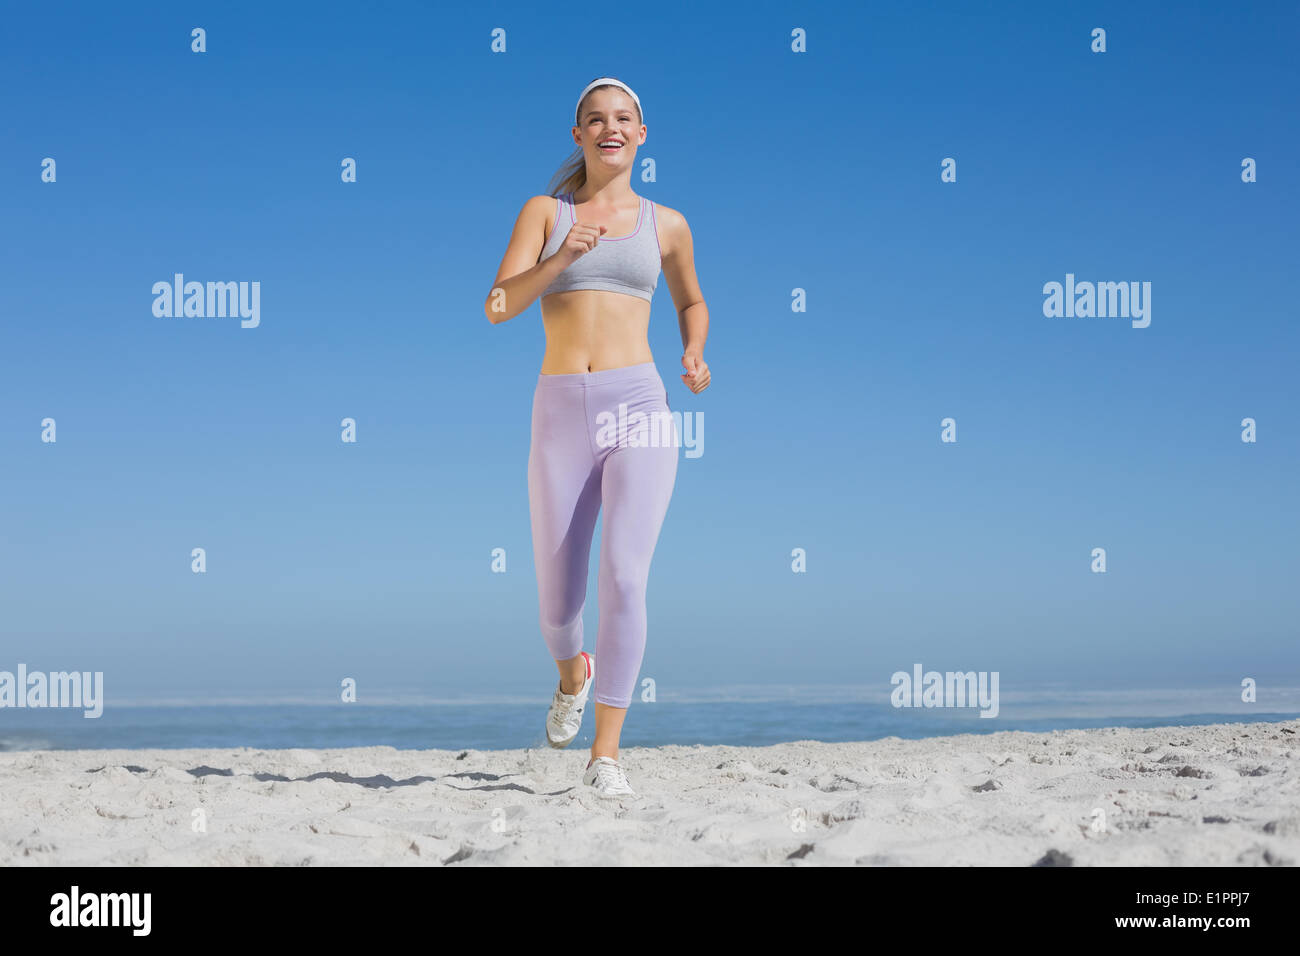 Bionda sportiva sulla spiaggia jogging verso la telecamera Foto Stock